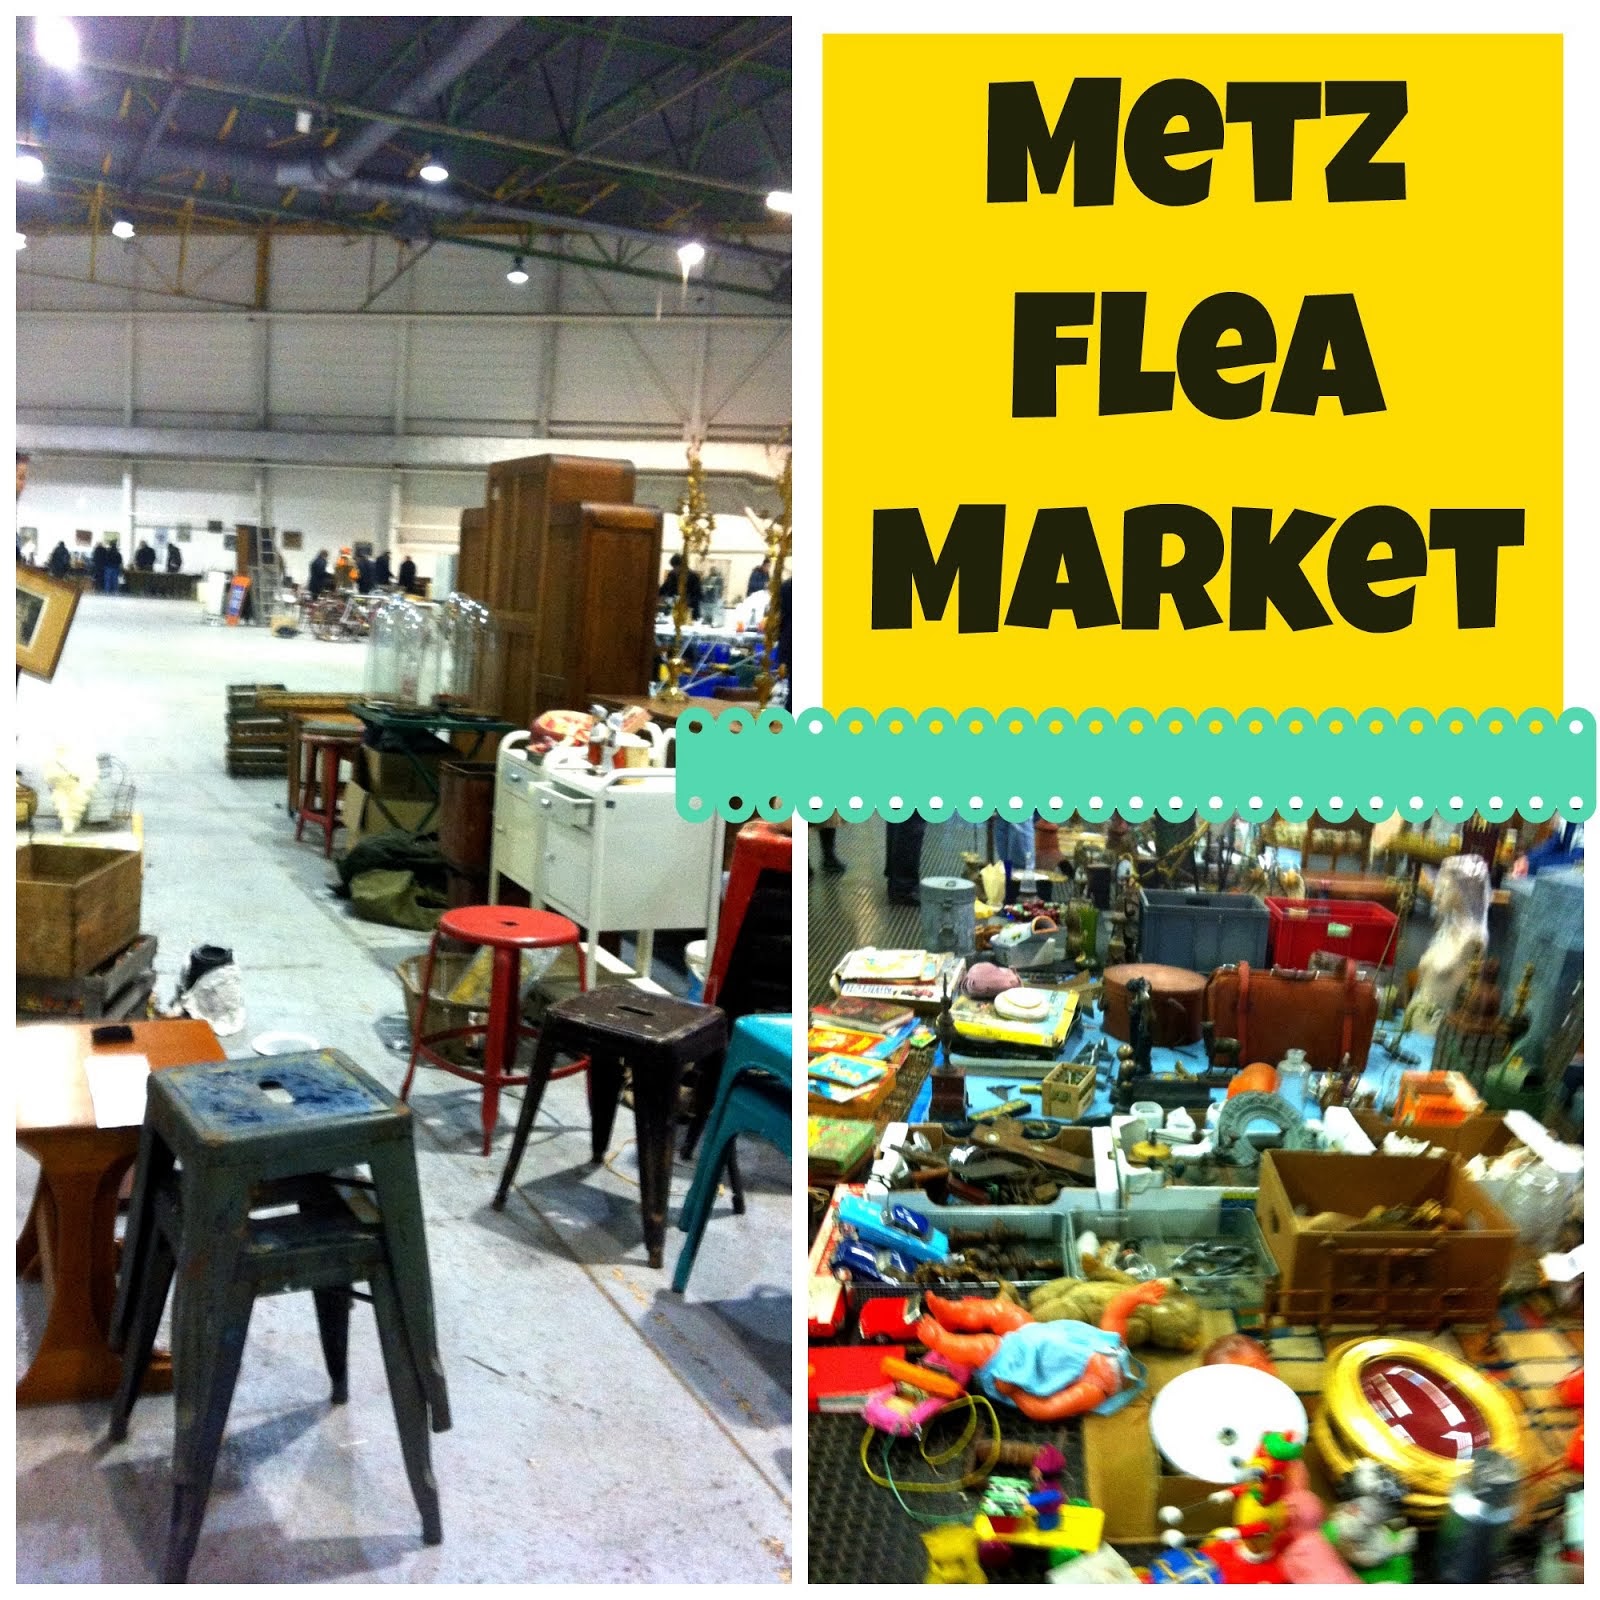 Metz Flea Market 1.5 hours drive